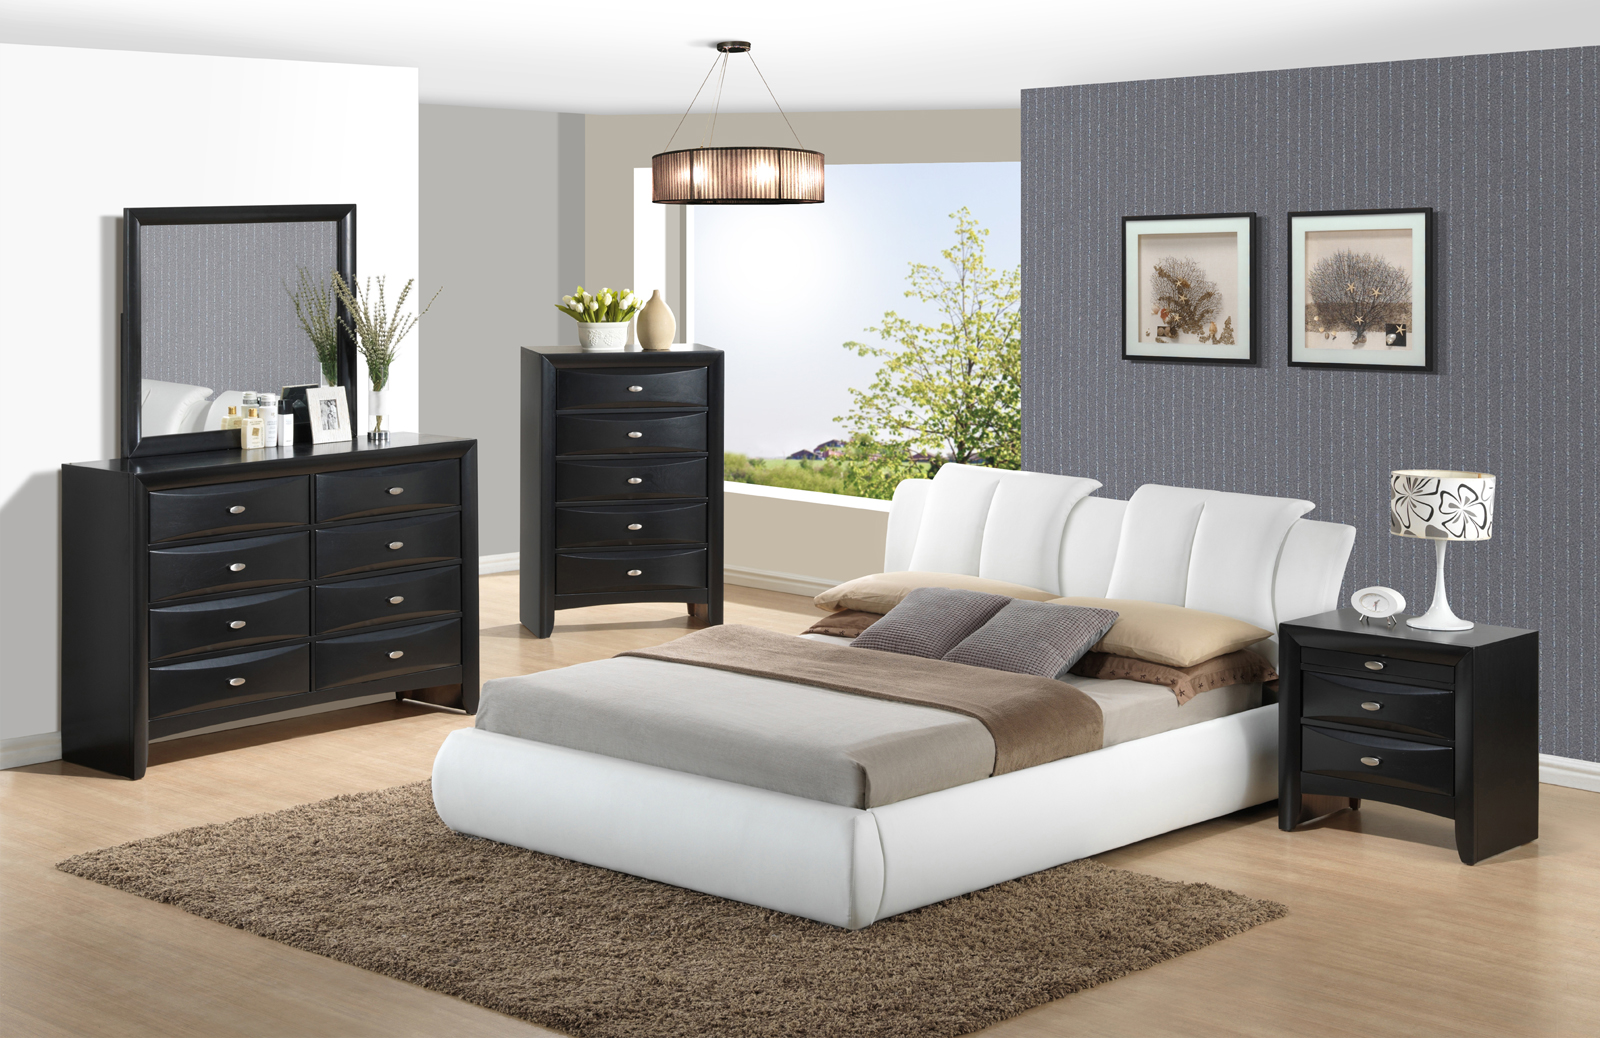 global white furniture bedroom set